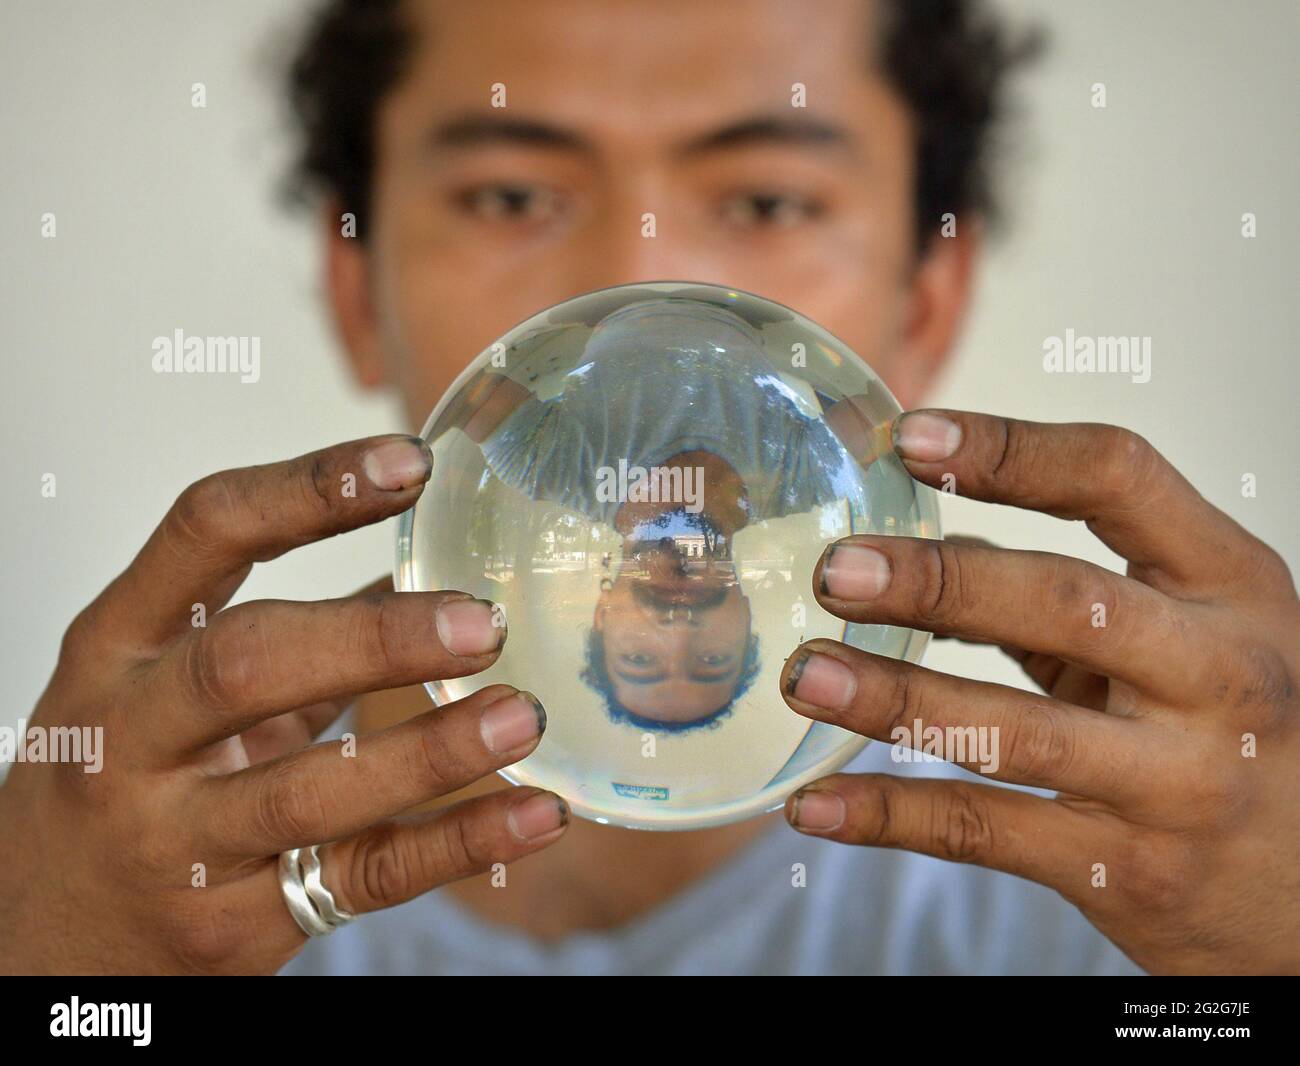 Un joven latino con uñas sucias sostiene una bola de cristal y mira fijamente con ojos fascinantes a su imagen de espejo volteada verticalmente en la orbe mágica. Foto de stock